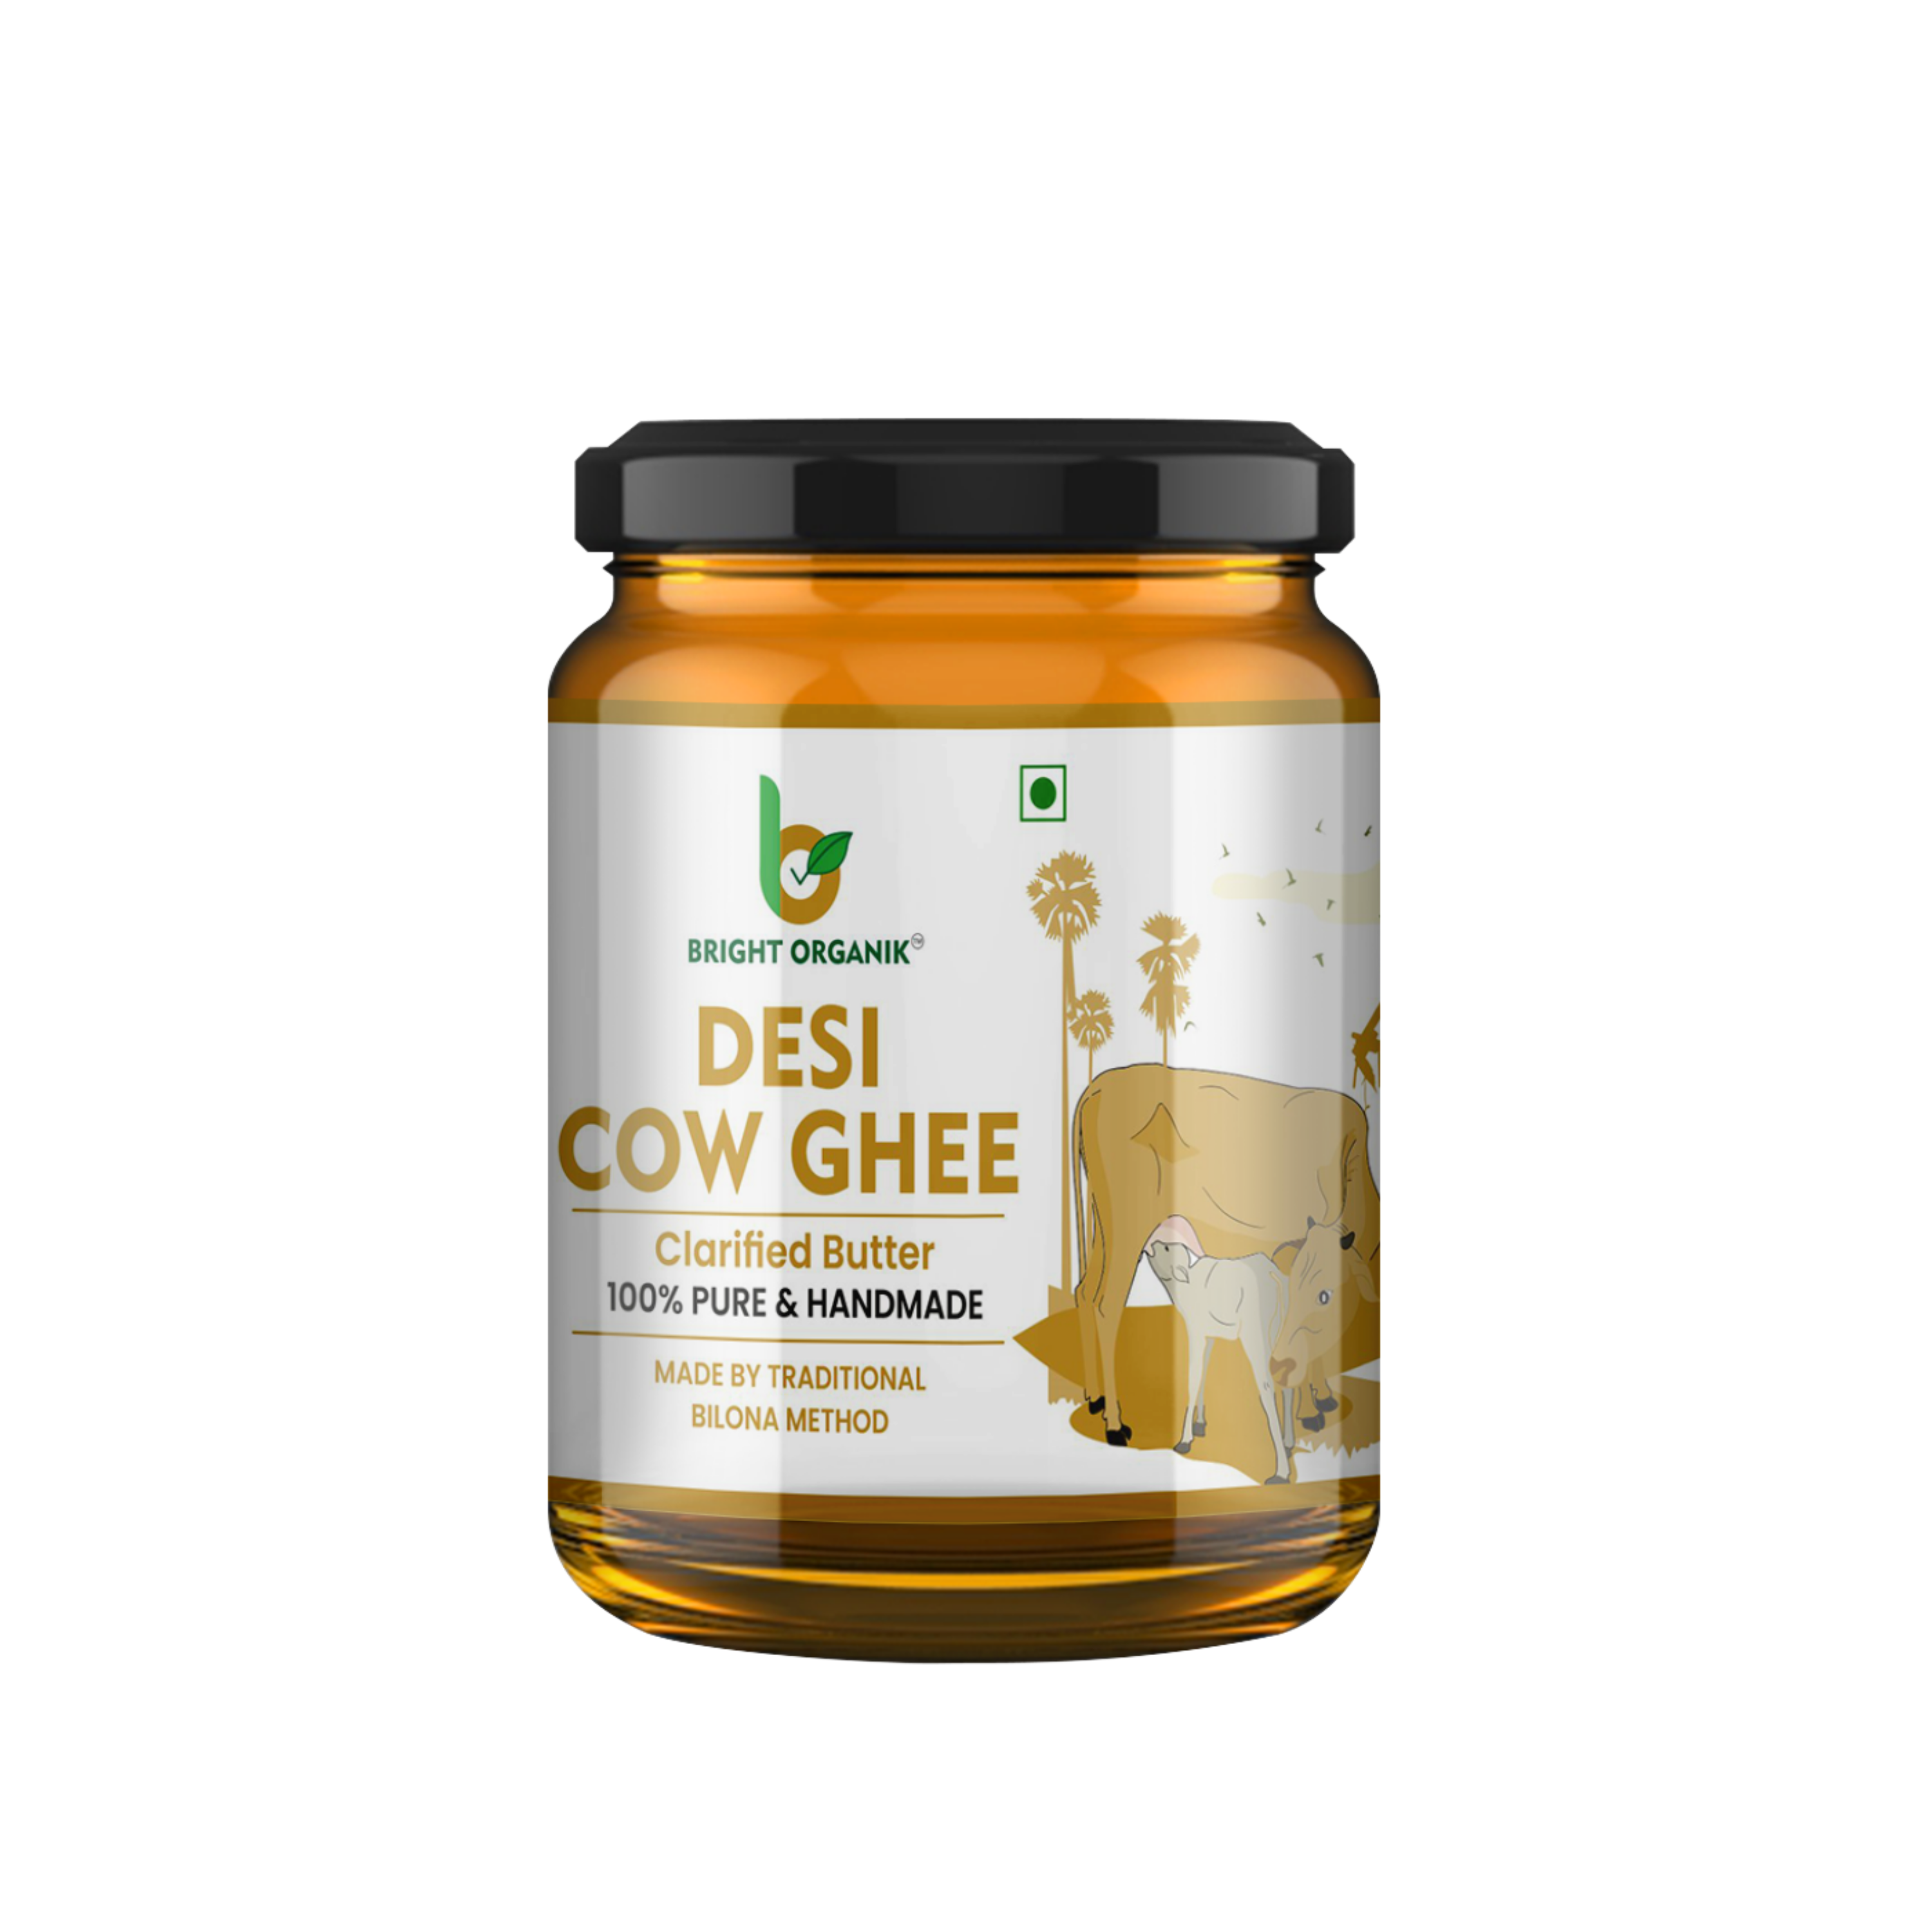 500 ml of bright organik cow ghee jar